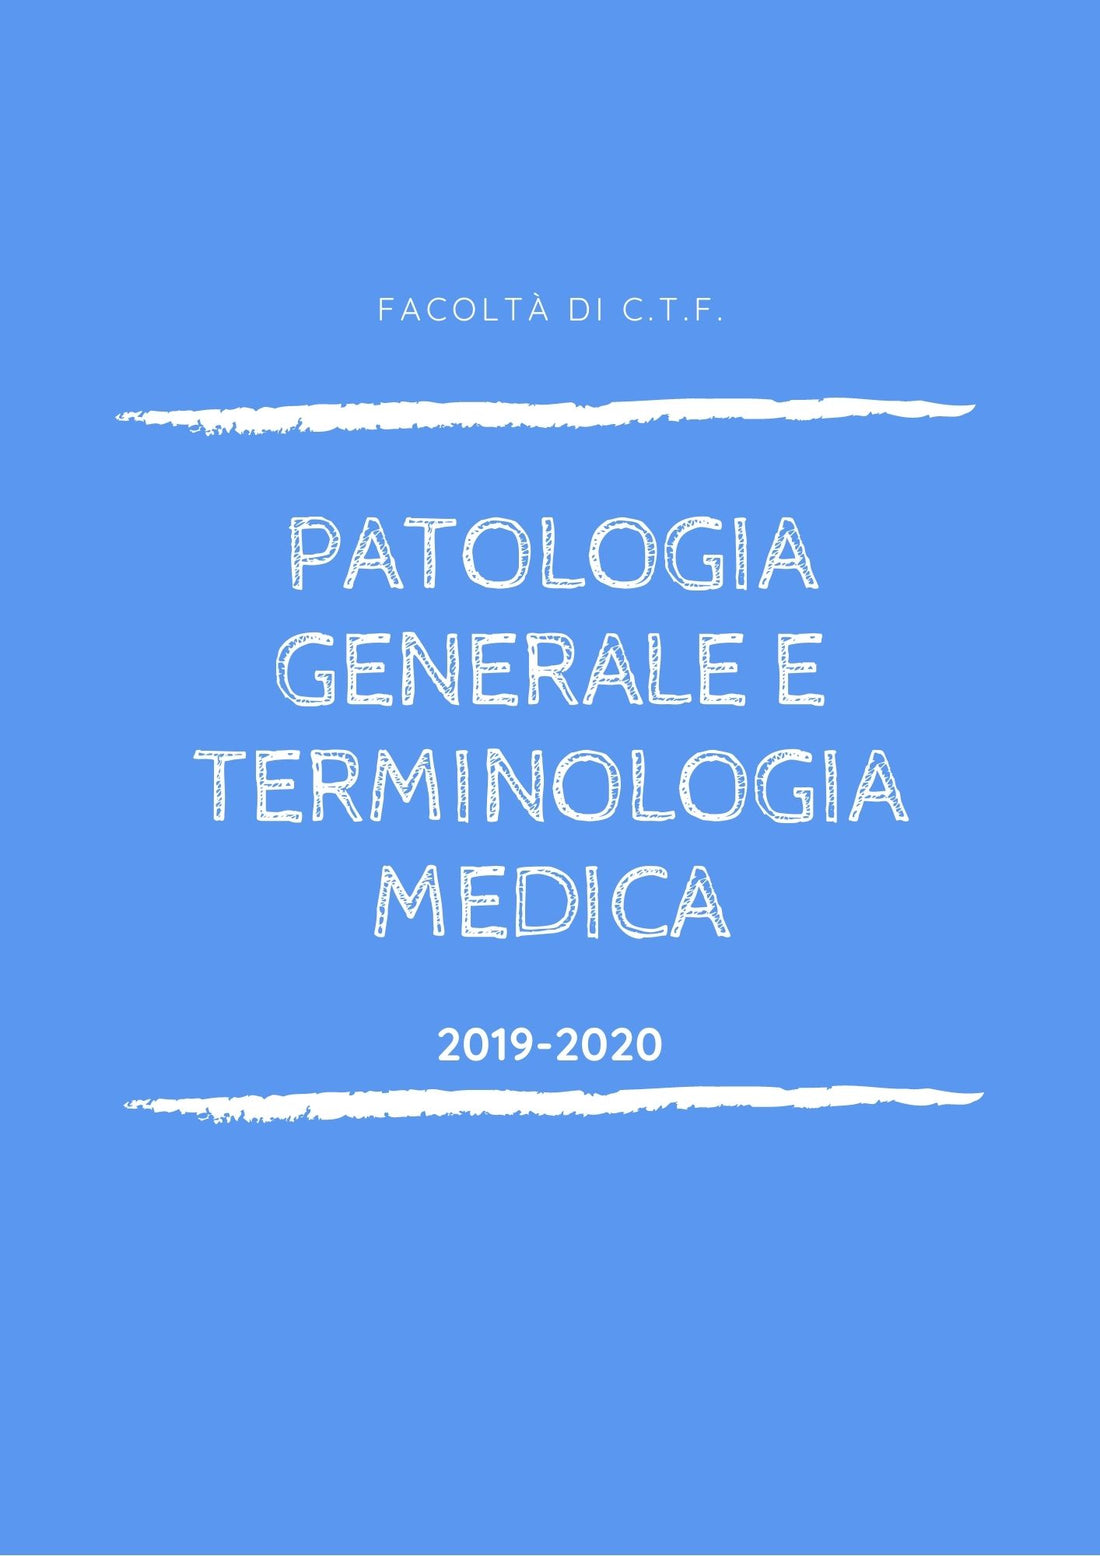 Patologia Generale e Terminologia Medica - Slide